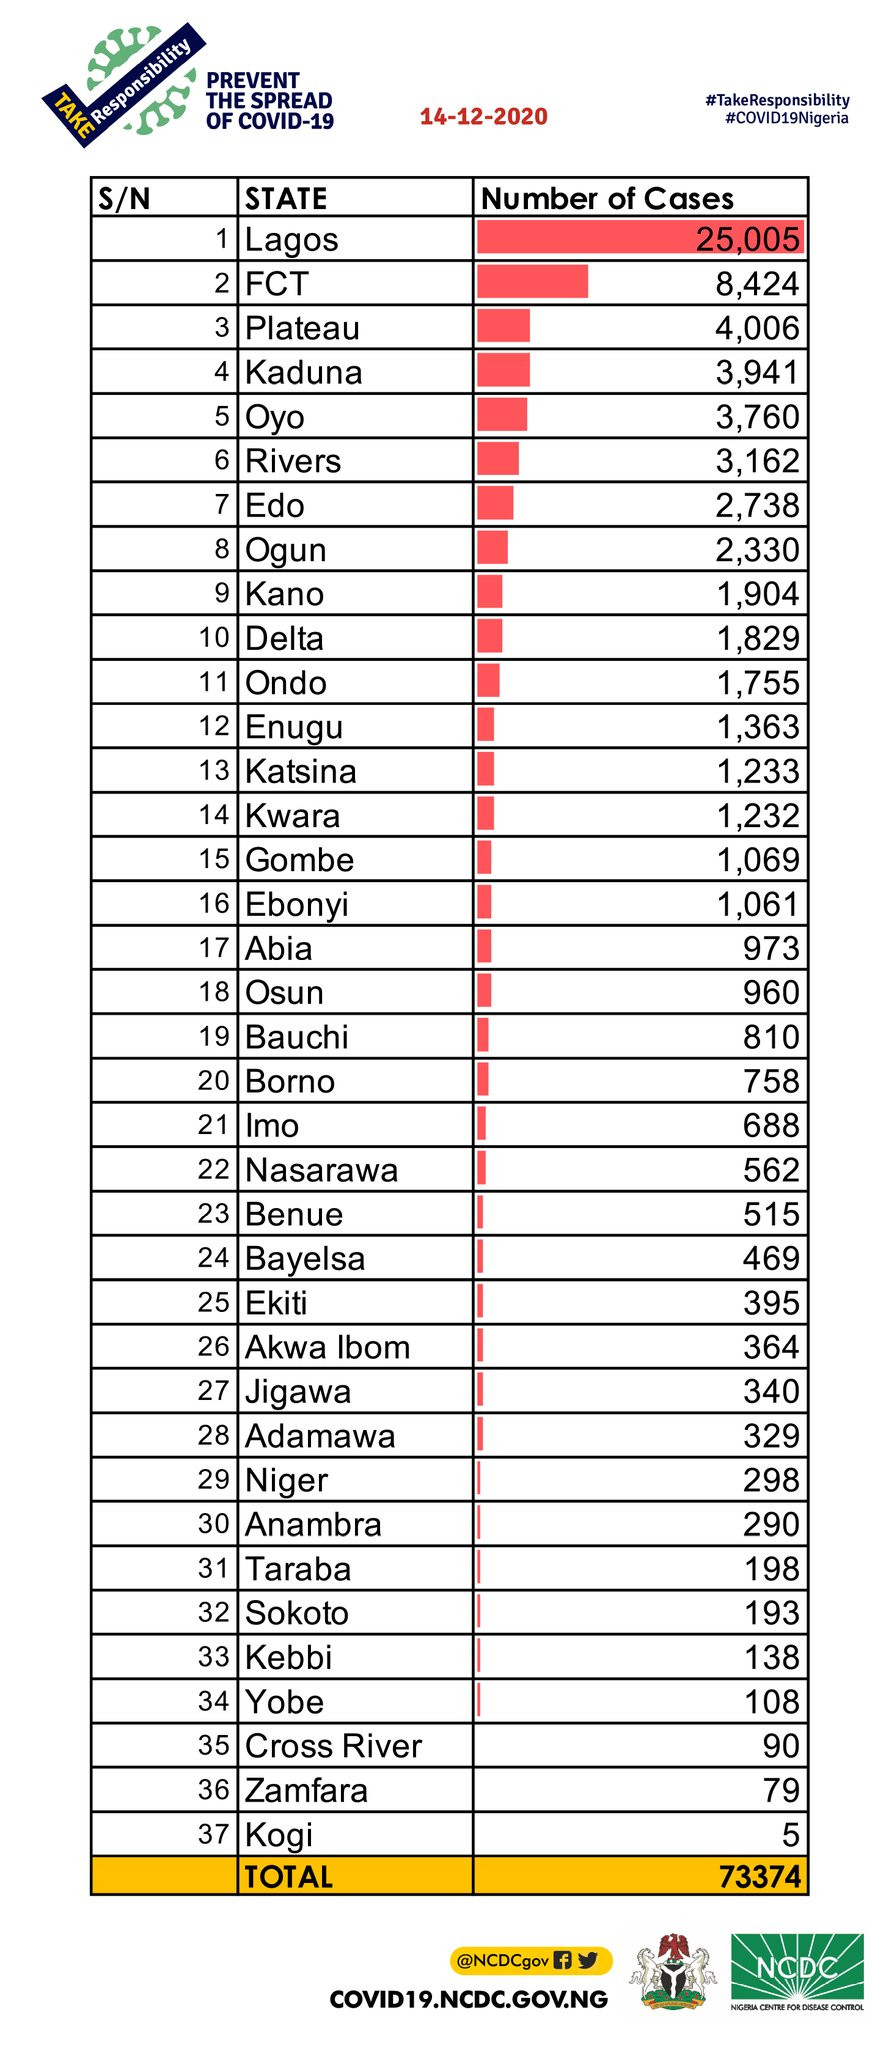 COVID-19 cases recorded in Nigeria